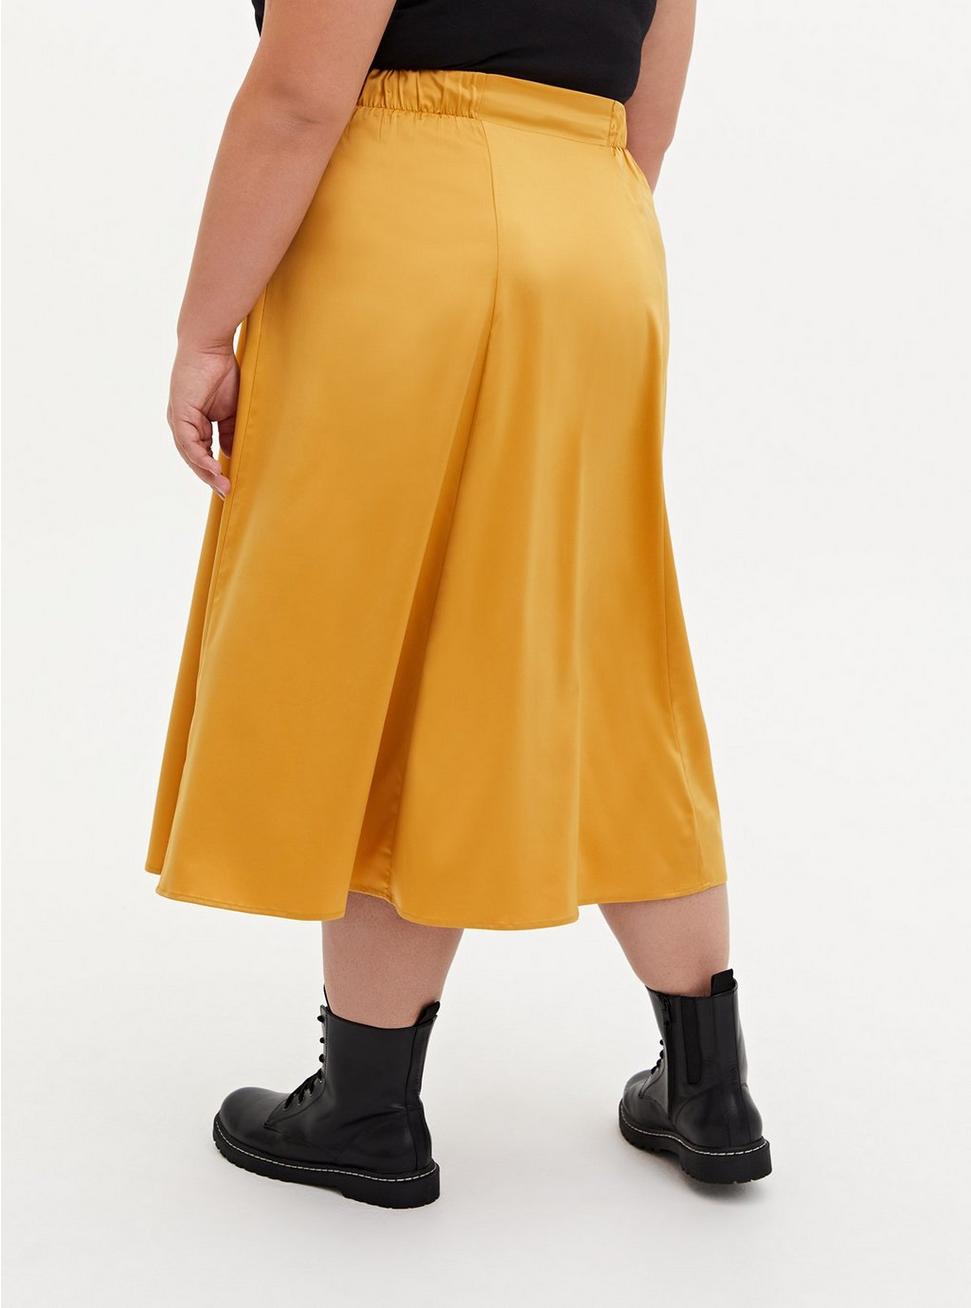 Golden Yellow Satin Tea Length Skirt, GOLD, alternate